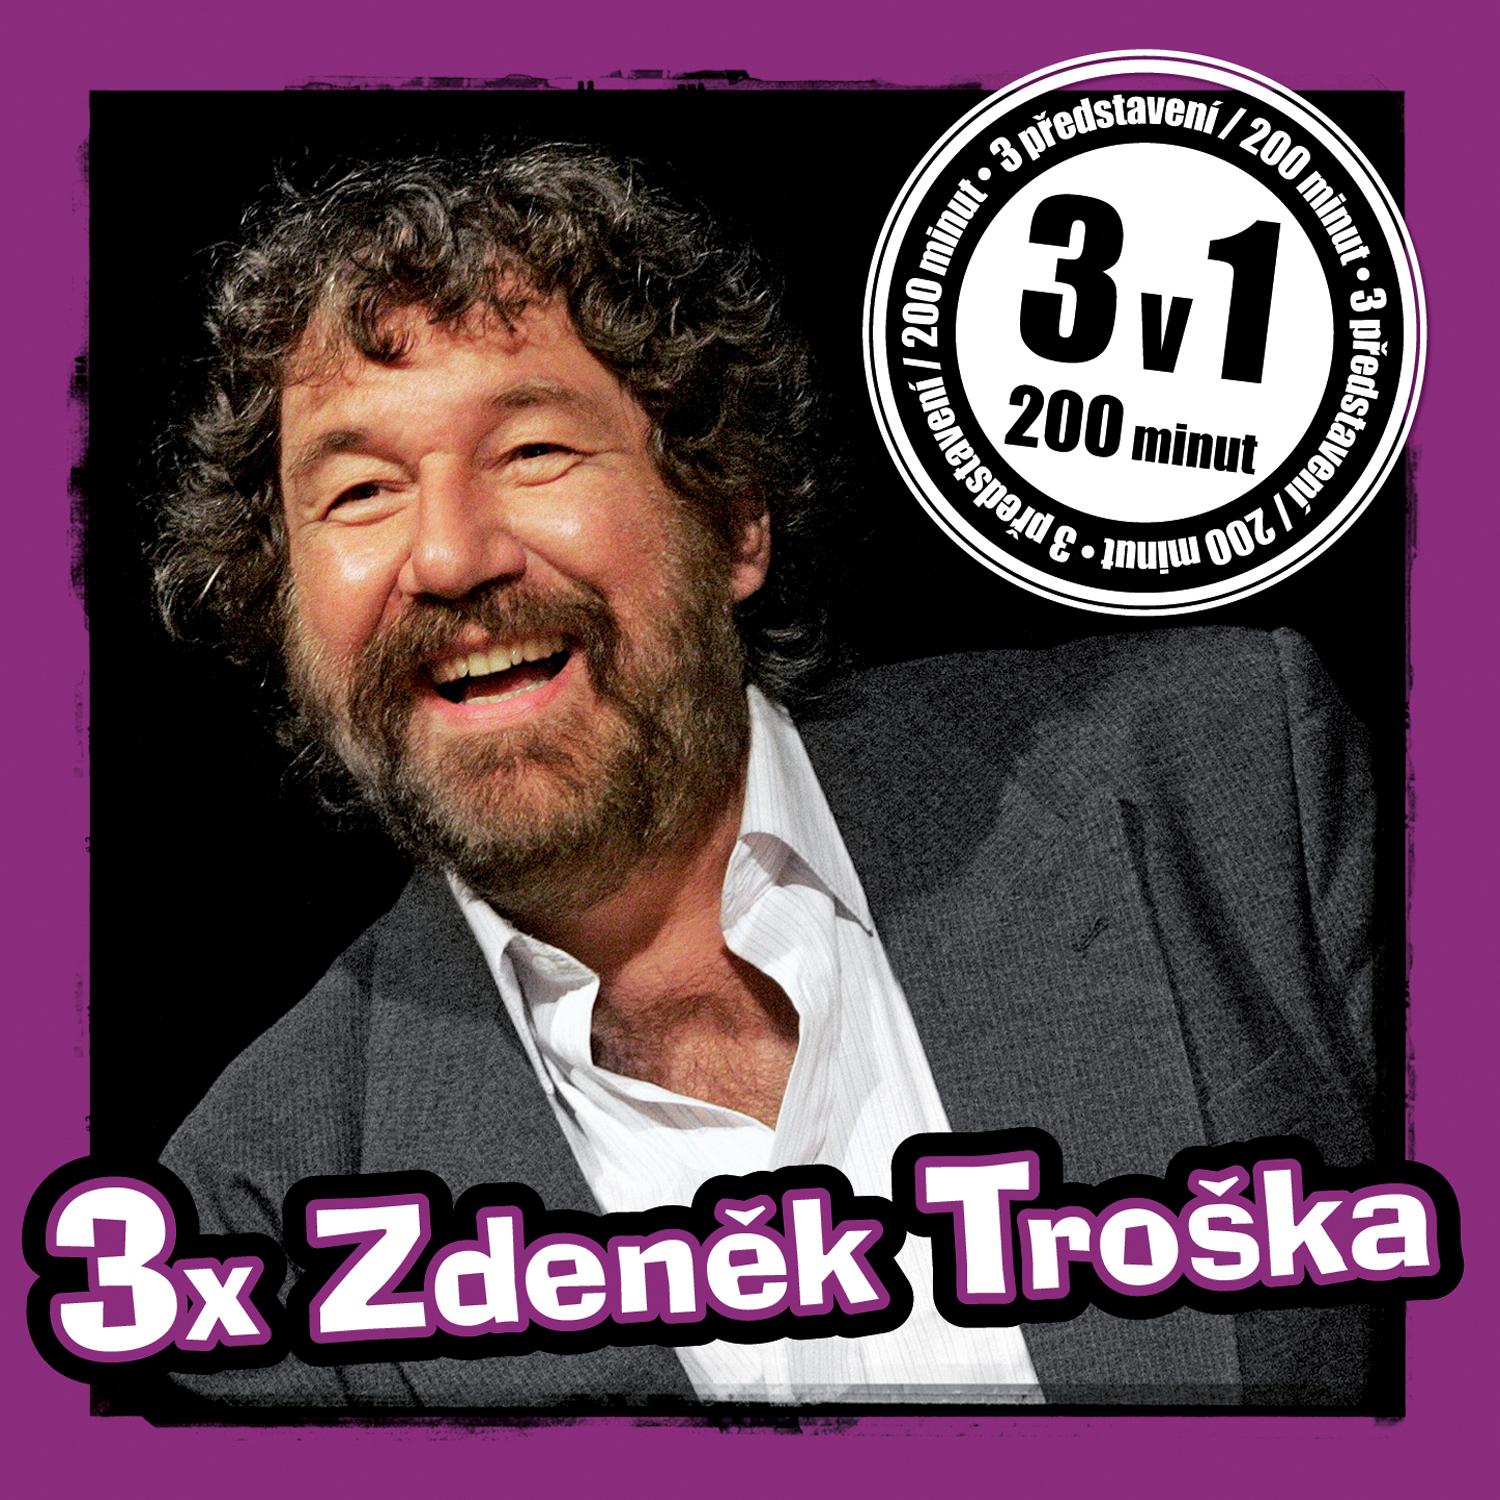 CD Shop - TROSKA ZDENEK 3X ZDENEK TROSKA (MP3-CD)